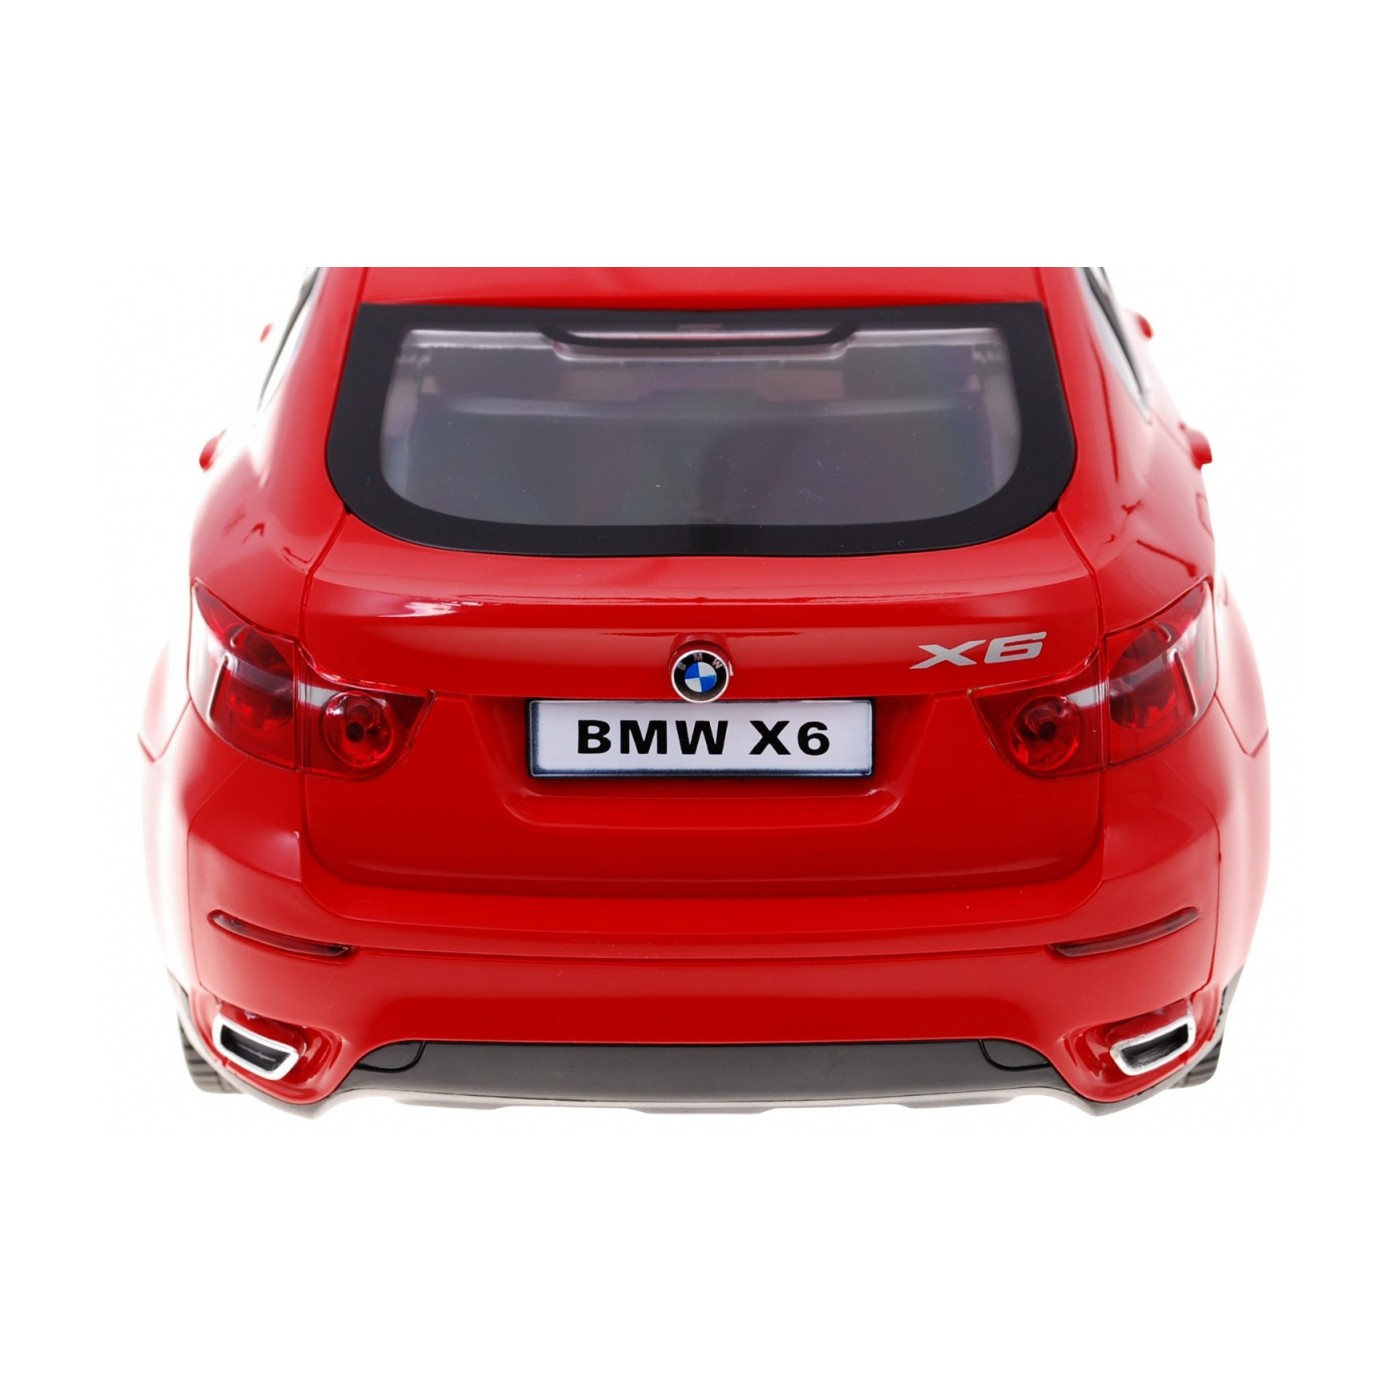 Autko R/C BMW X6 Czerwony 1:14 RASTAR